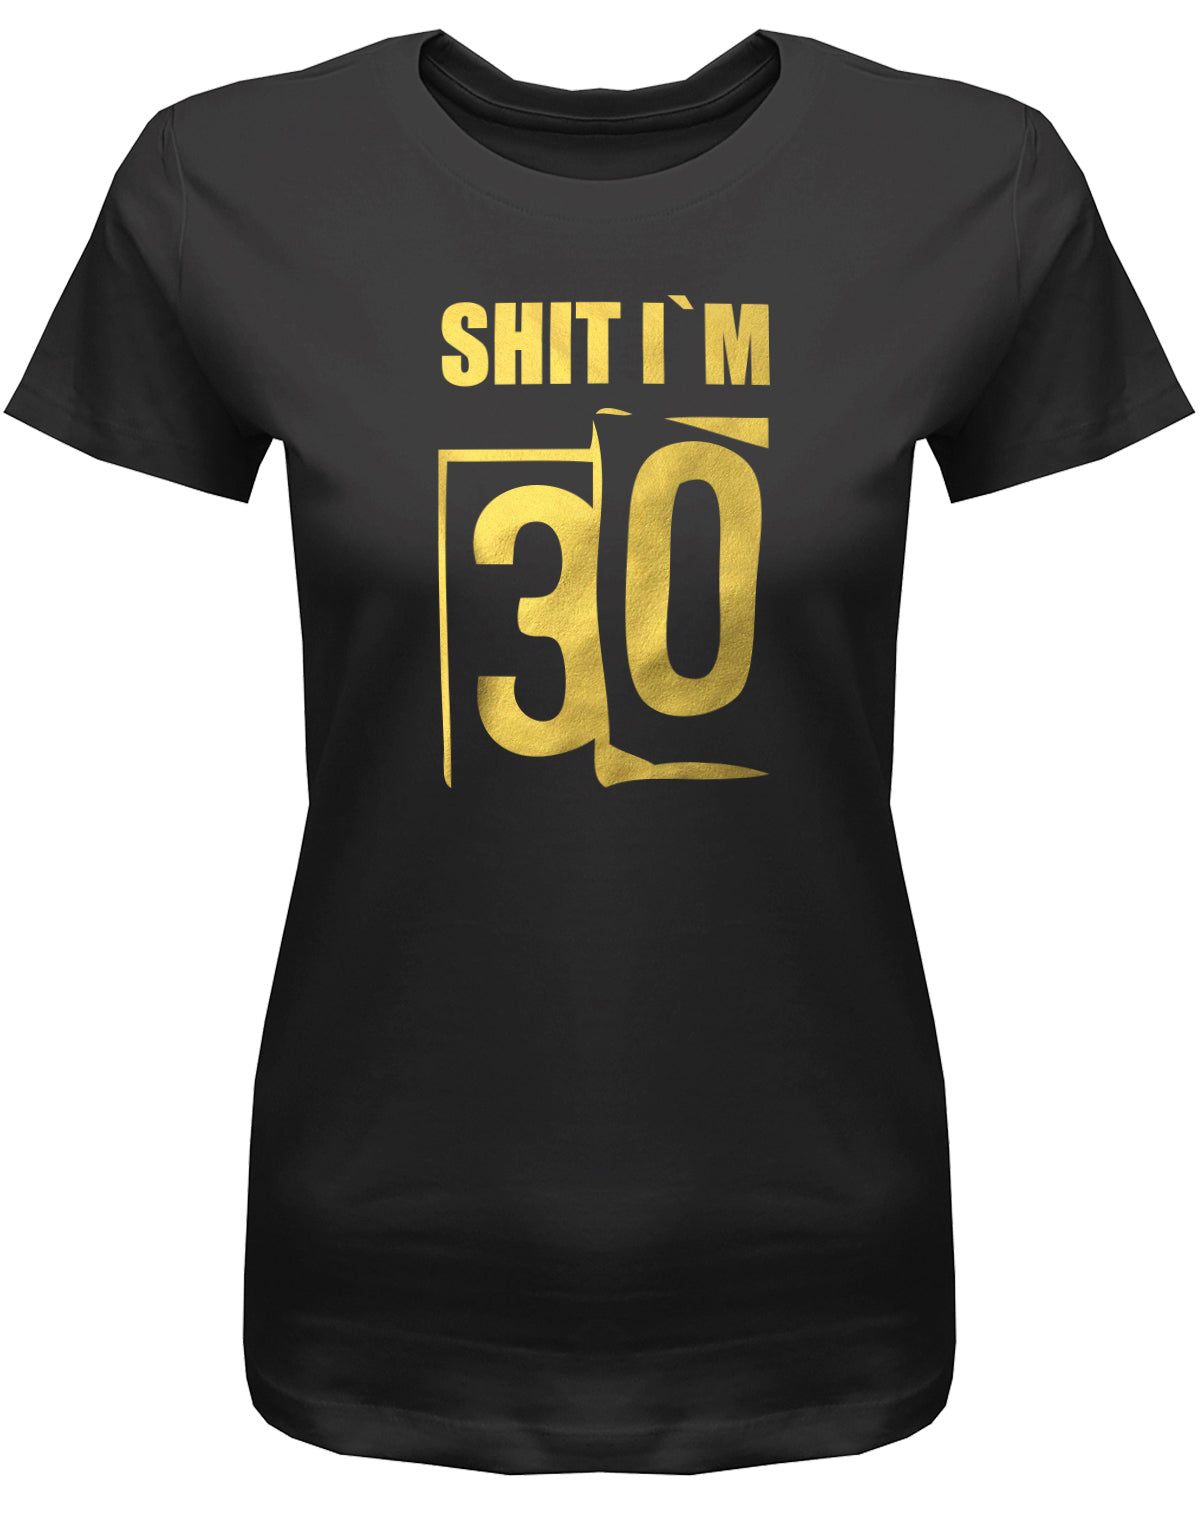 Lustiges T-Shirt zum 30. Geburtstag für die Frau Bedruckt mit: Shit i´m 30. Scheisse ich bin 30. Geschenk zum 30 geburtstag Frau ✓ 1993 geburtstag Frau ✓ 30 Geburtstag tshirt ✓ shirt geburtstag 30 Schwarz